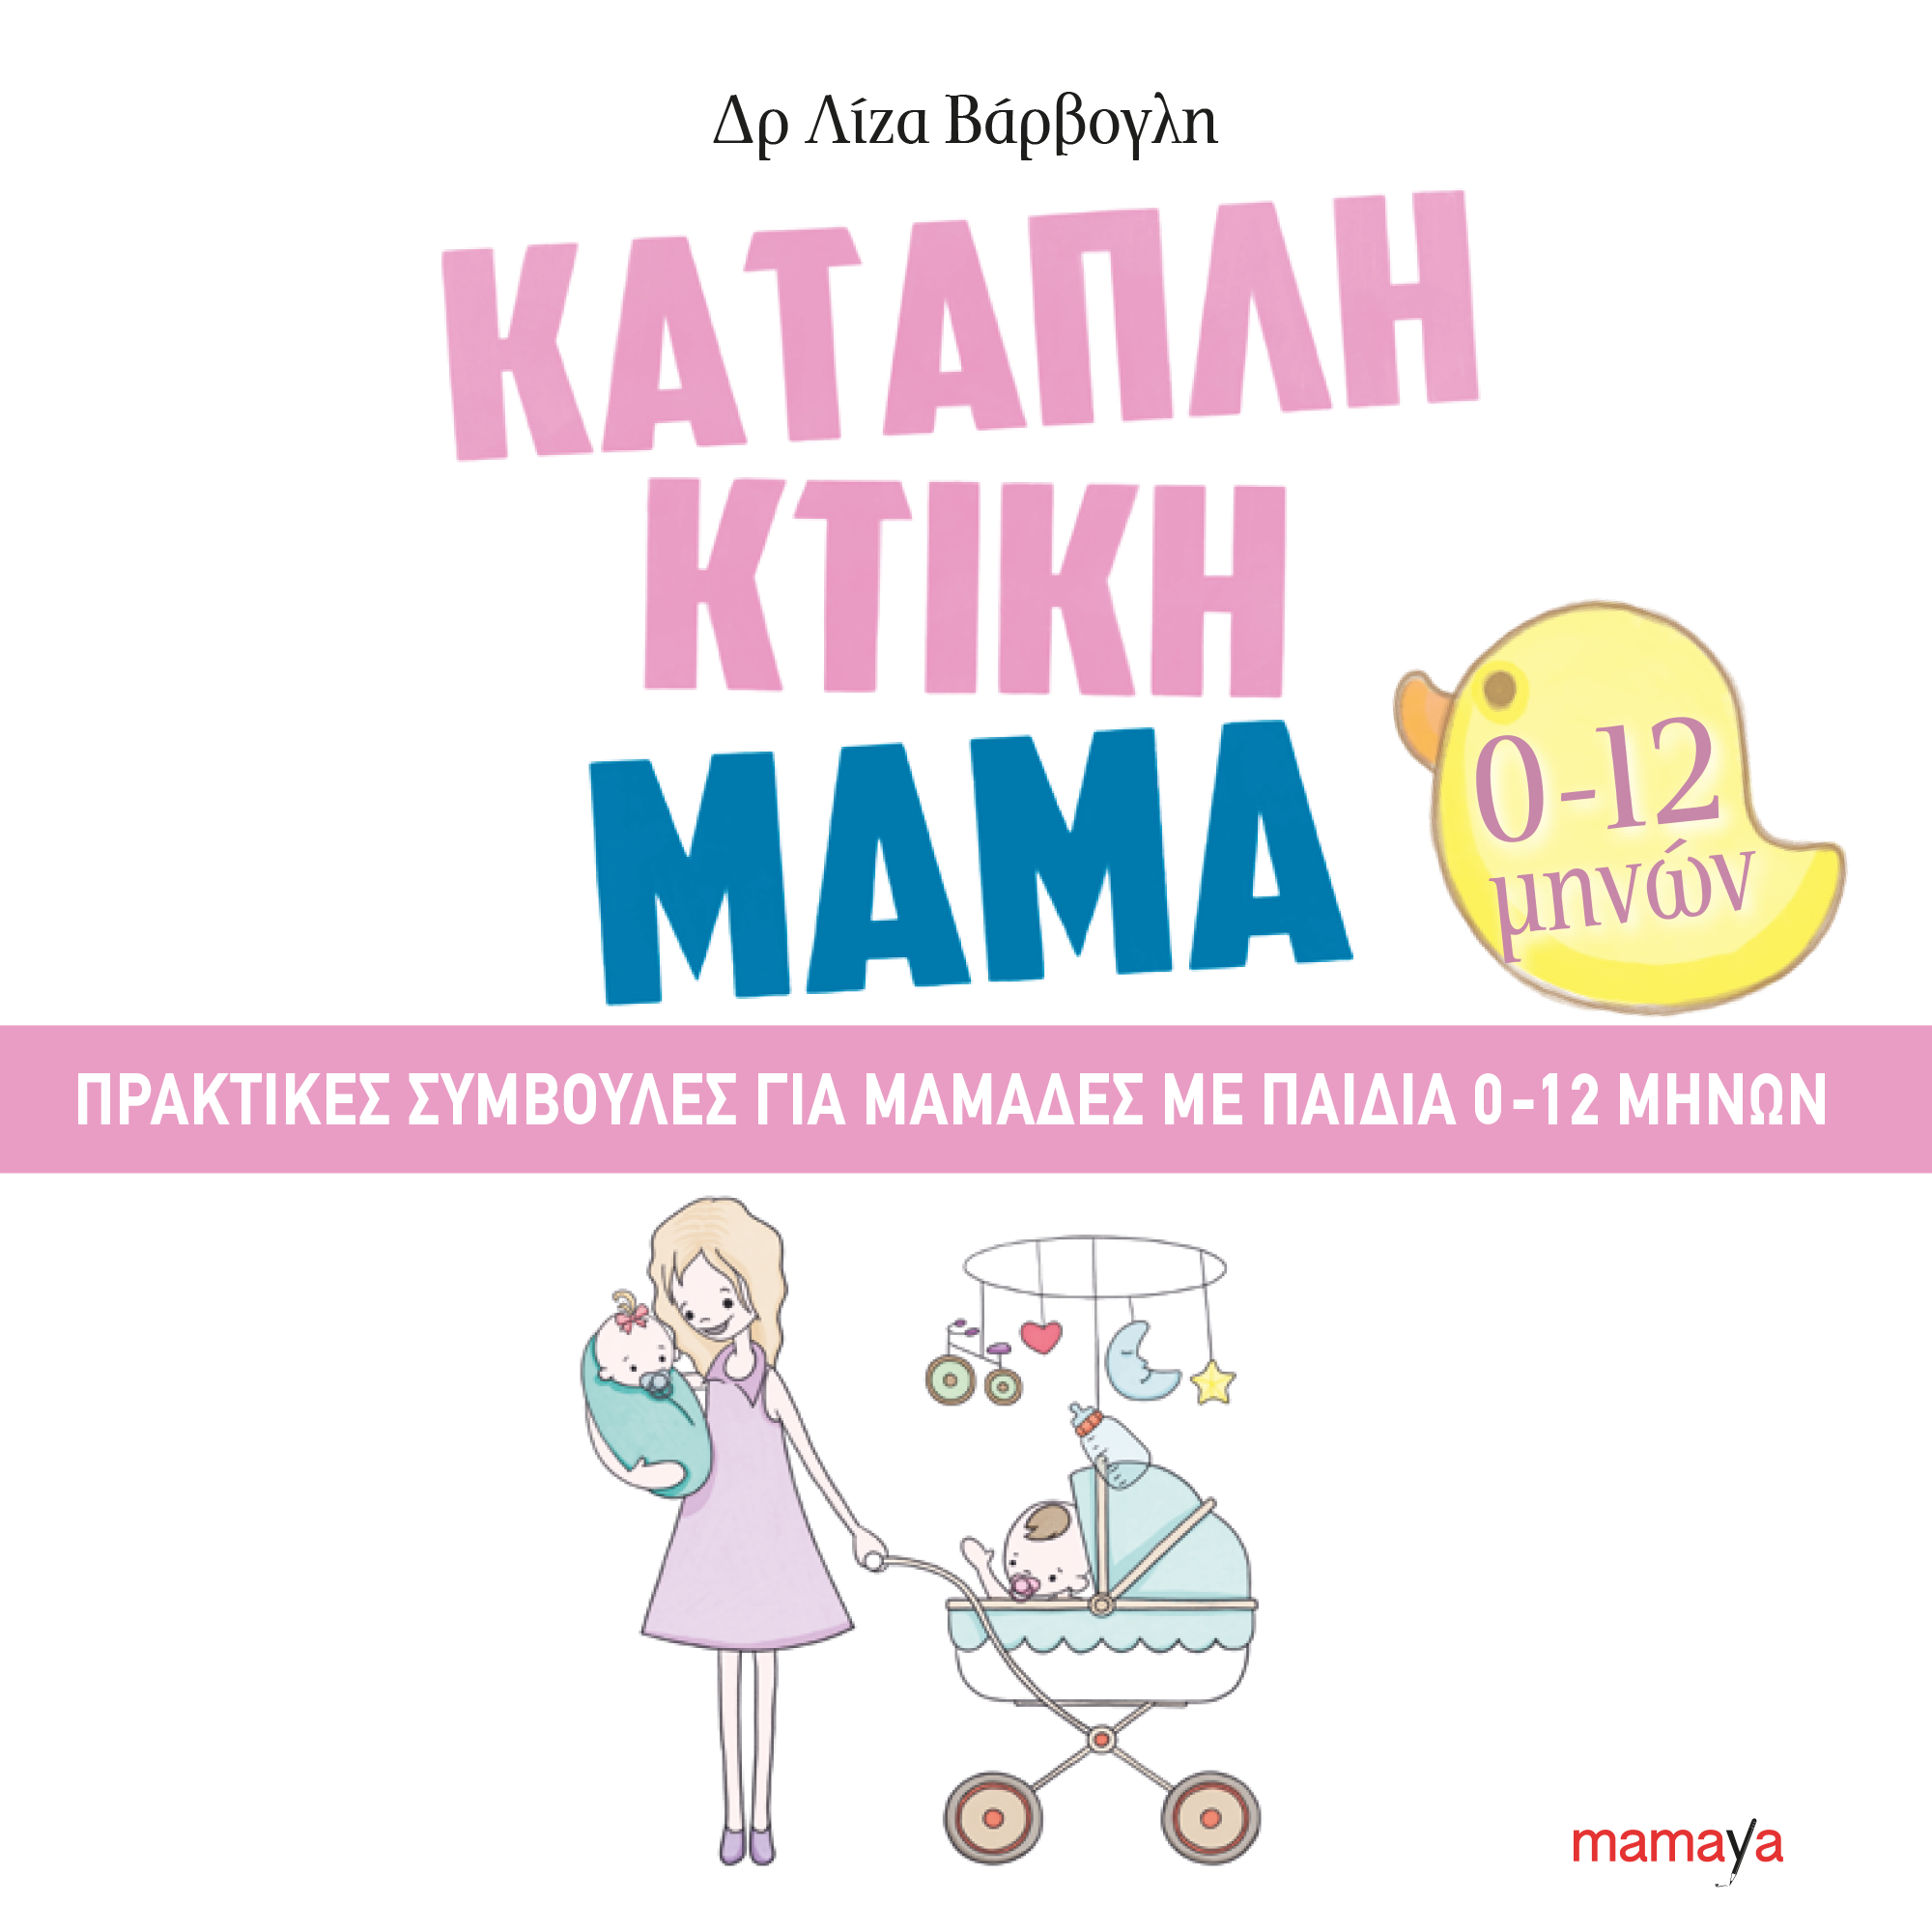 Καταπληκτική μαμά. Πρακτικές συμβουλές για μαμάδες με παιδιά 0-12 μηνών